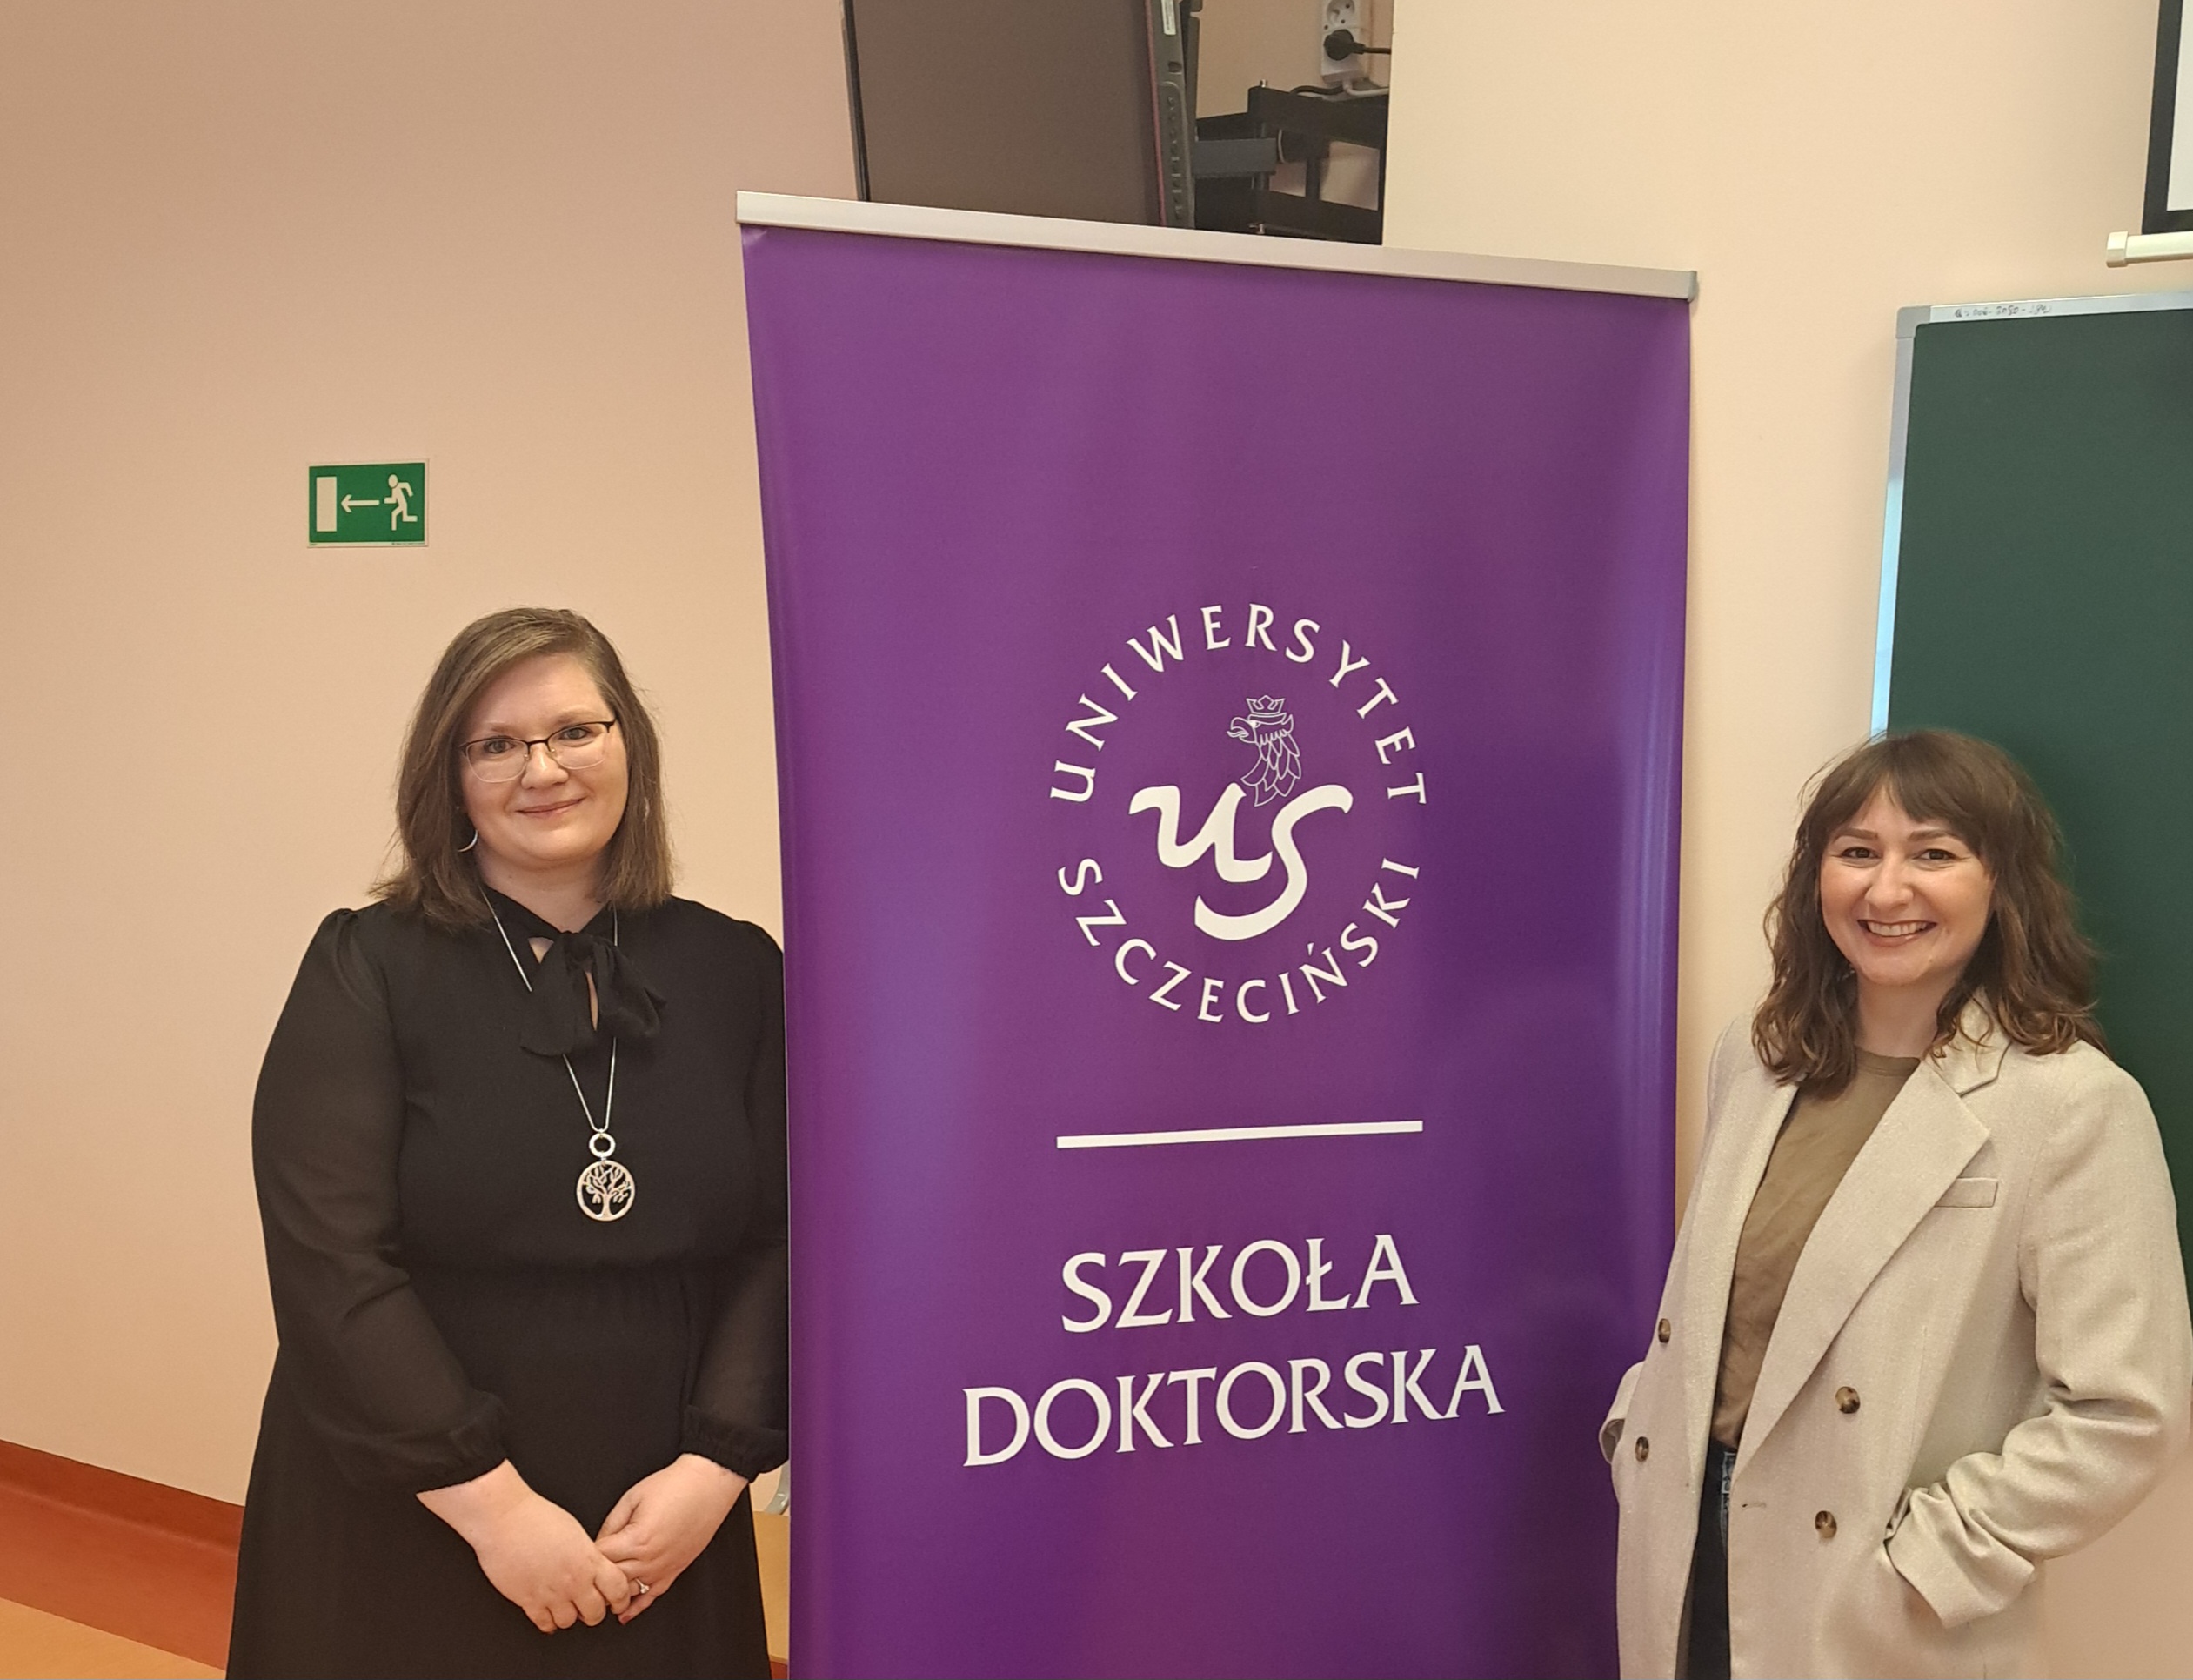 Kurs języka polskiego dla doktorantów Szkoły Doktorskiej Uniwersytetu Szczecińskiego